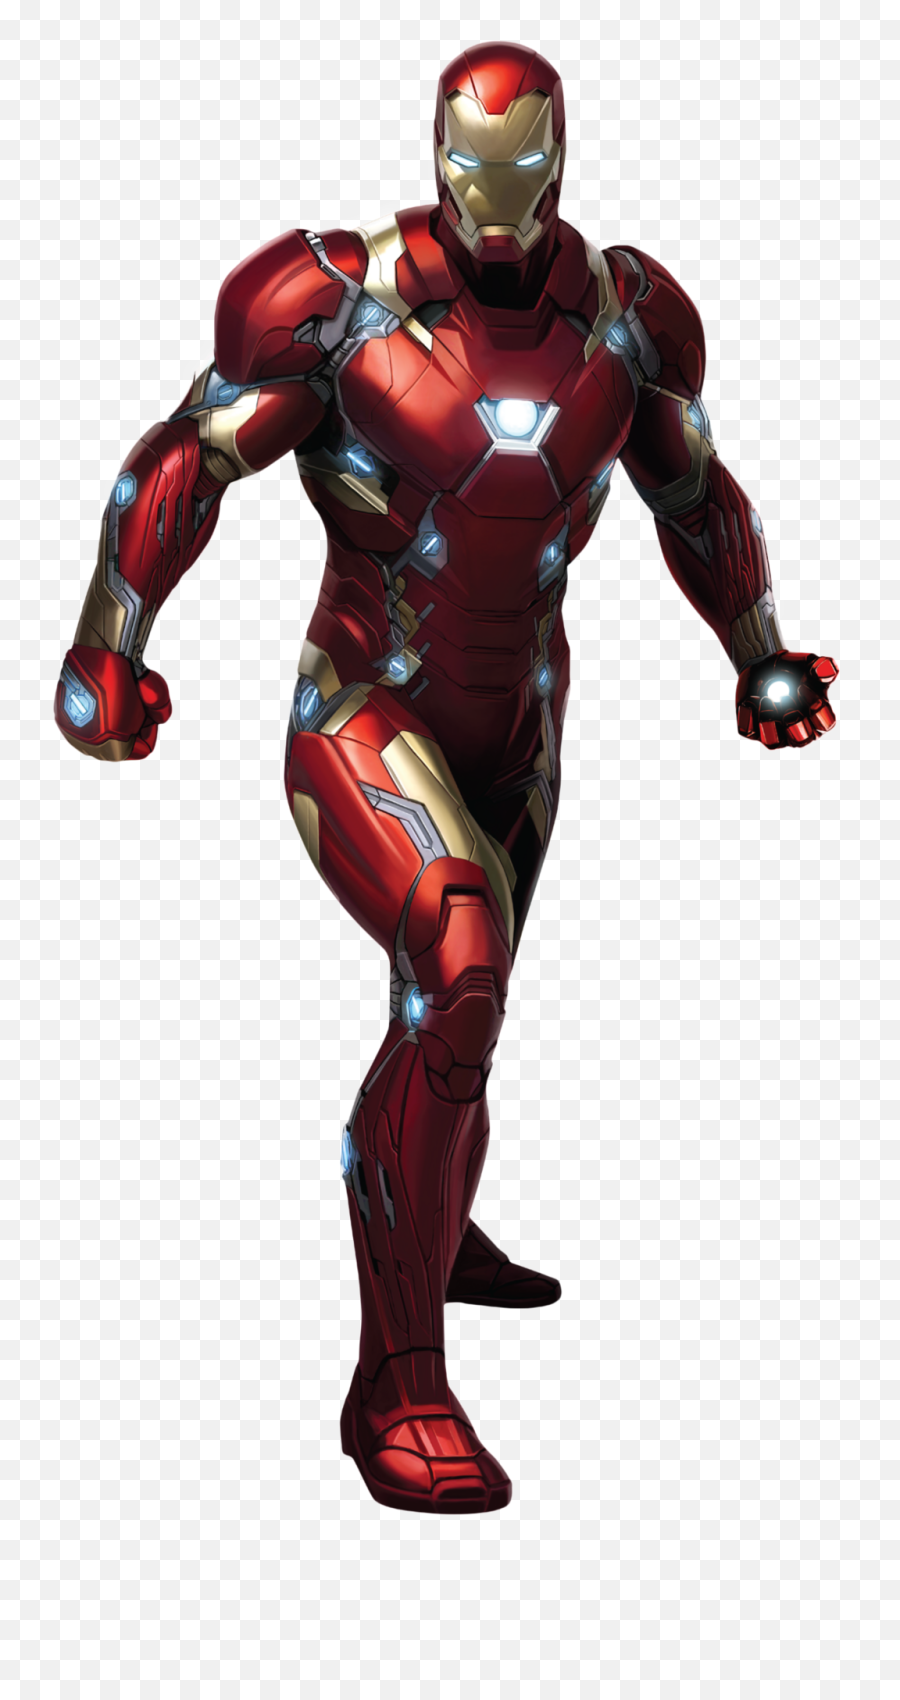 Ironman Clipart Transparent Background - Iron Man Captain America Civil War Png,Iron Man Transparent